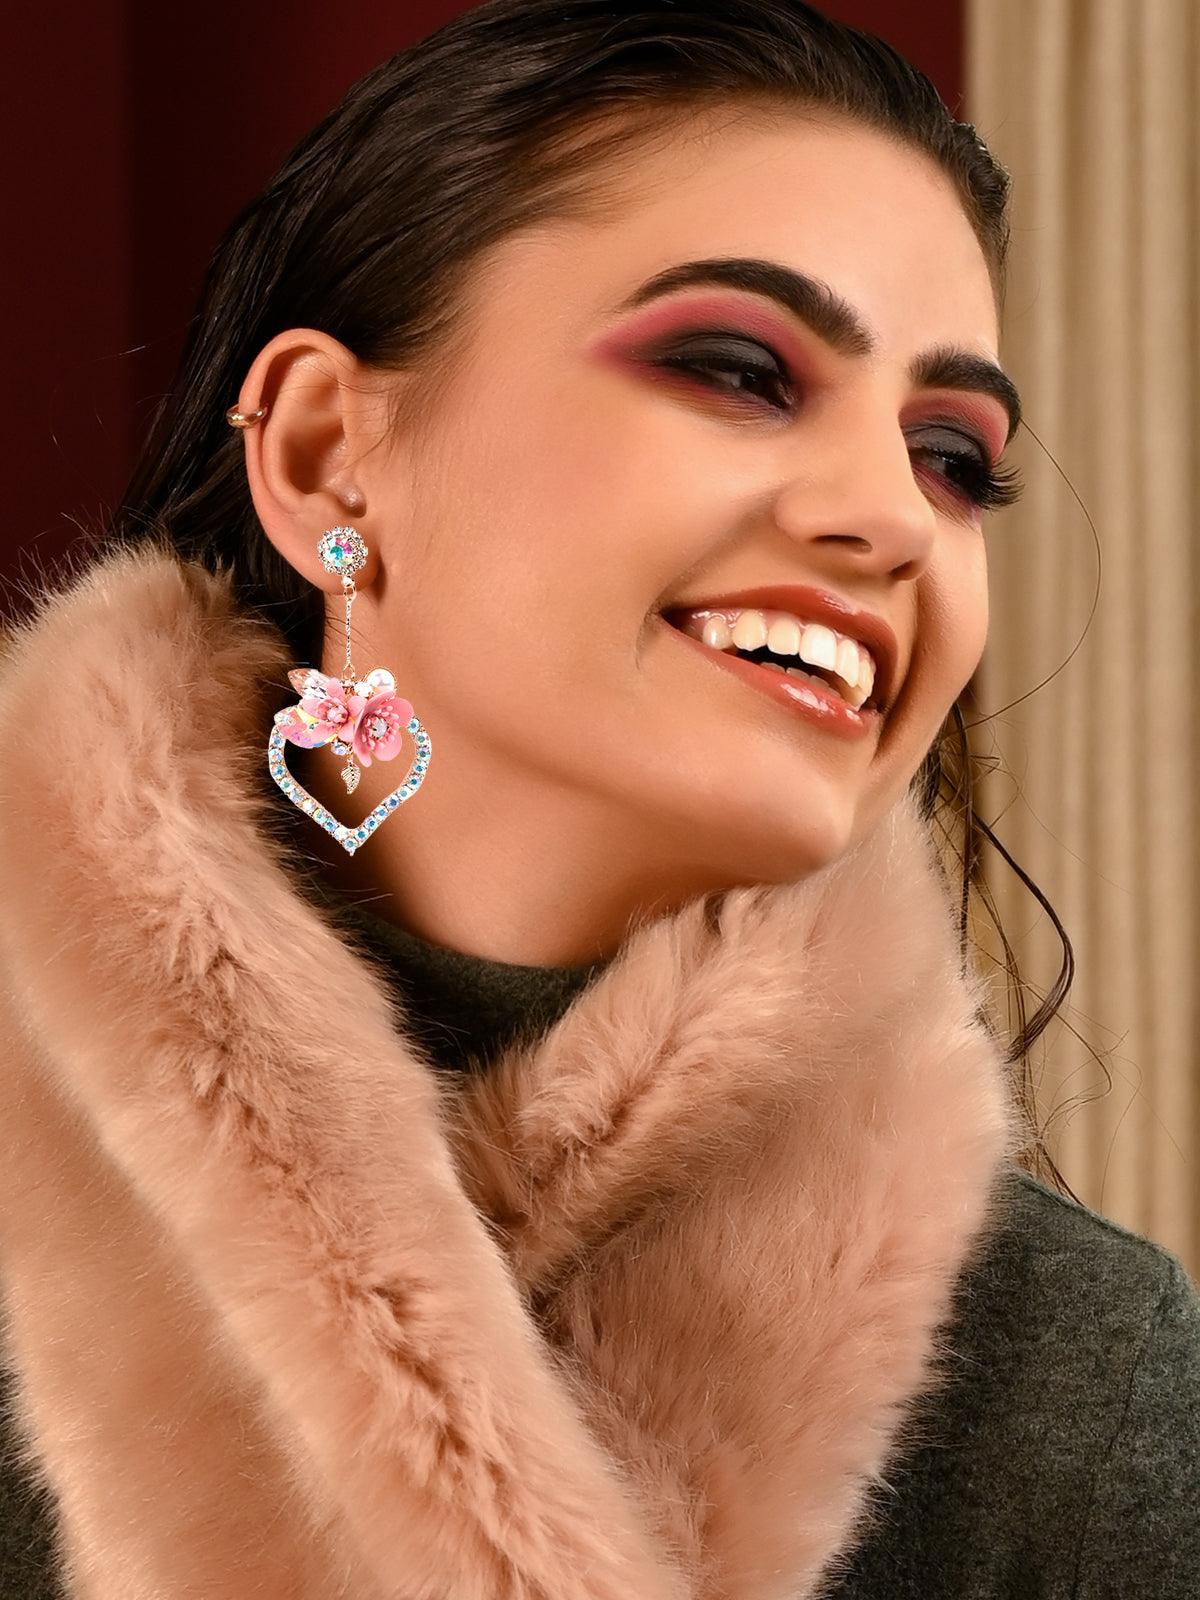 Women's Super Cute Pink Floral Heart Shaped Drop Statement Earrings - Odette